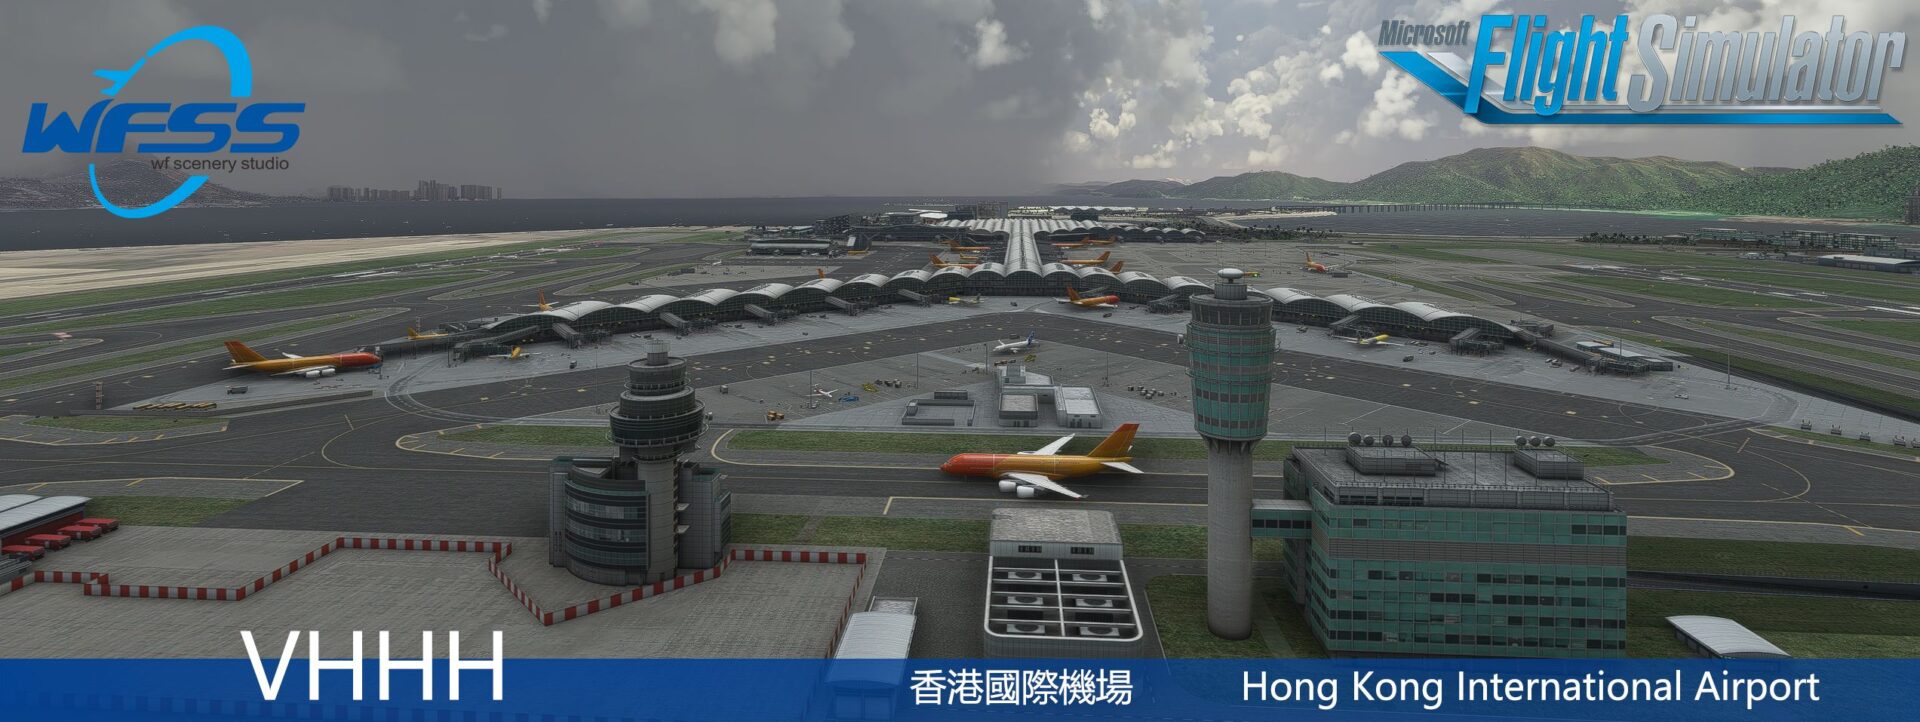 Microsoft Flight Simulator Hong Kong